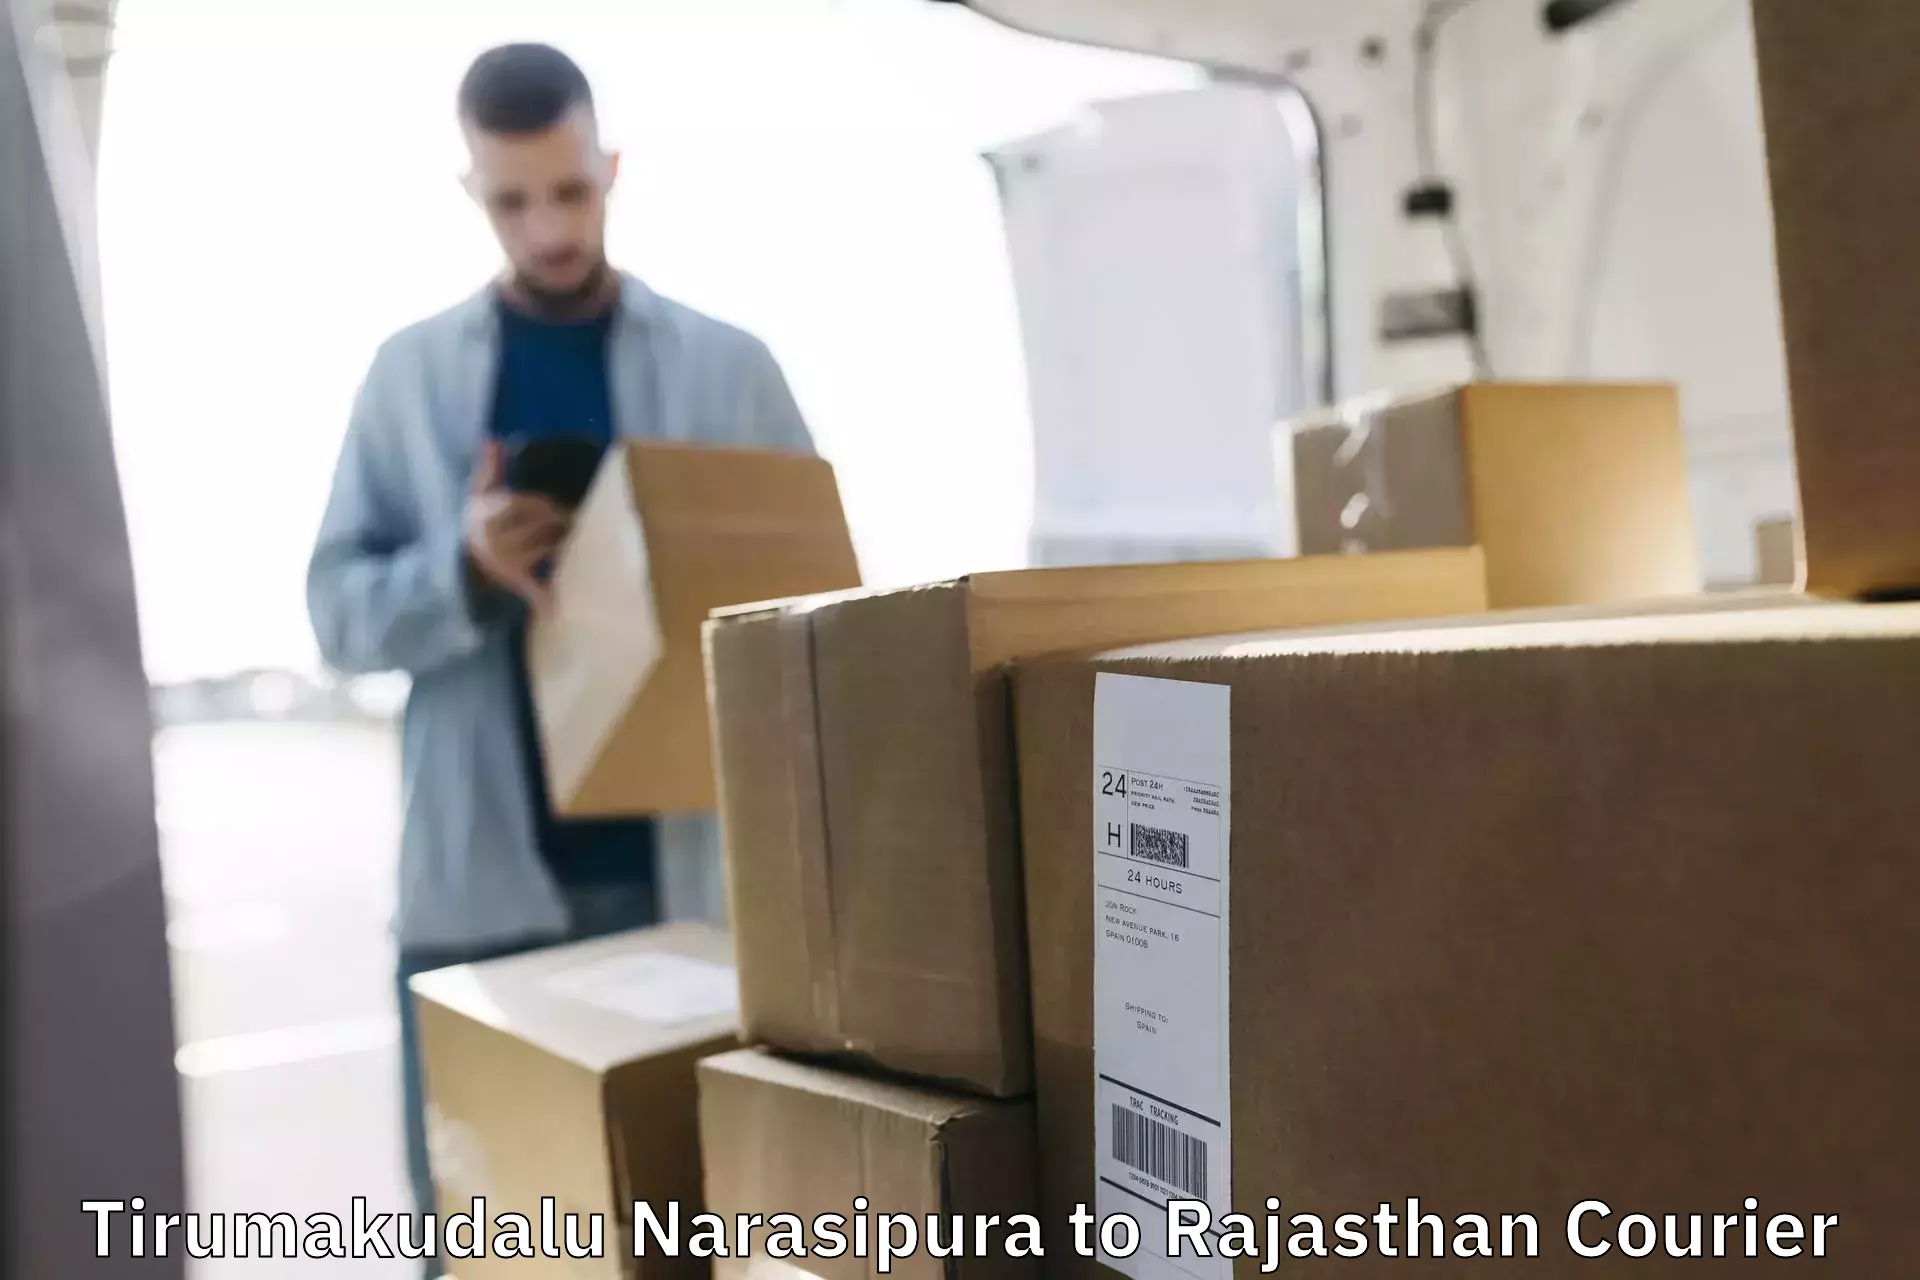 Digital courier platforms Tirumakudalu Narasipura to Srimadhopur